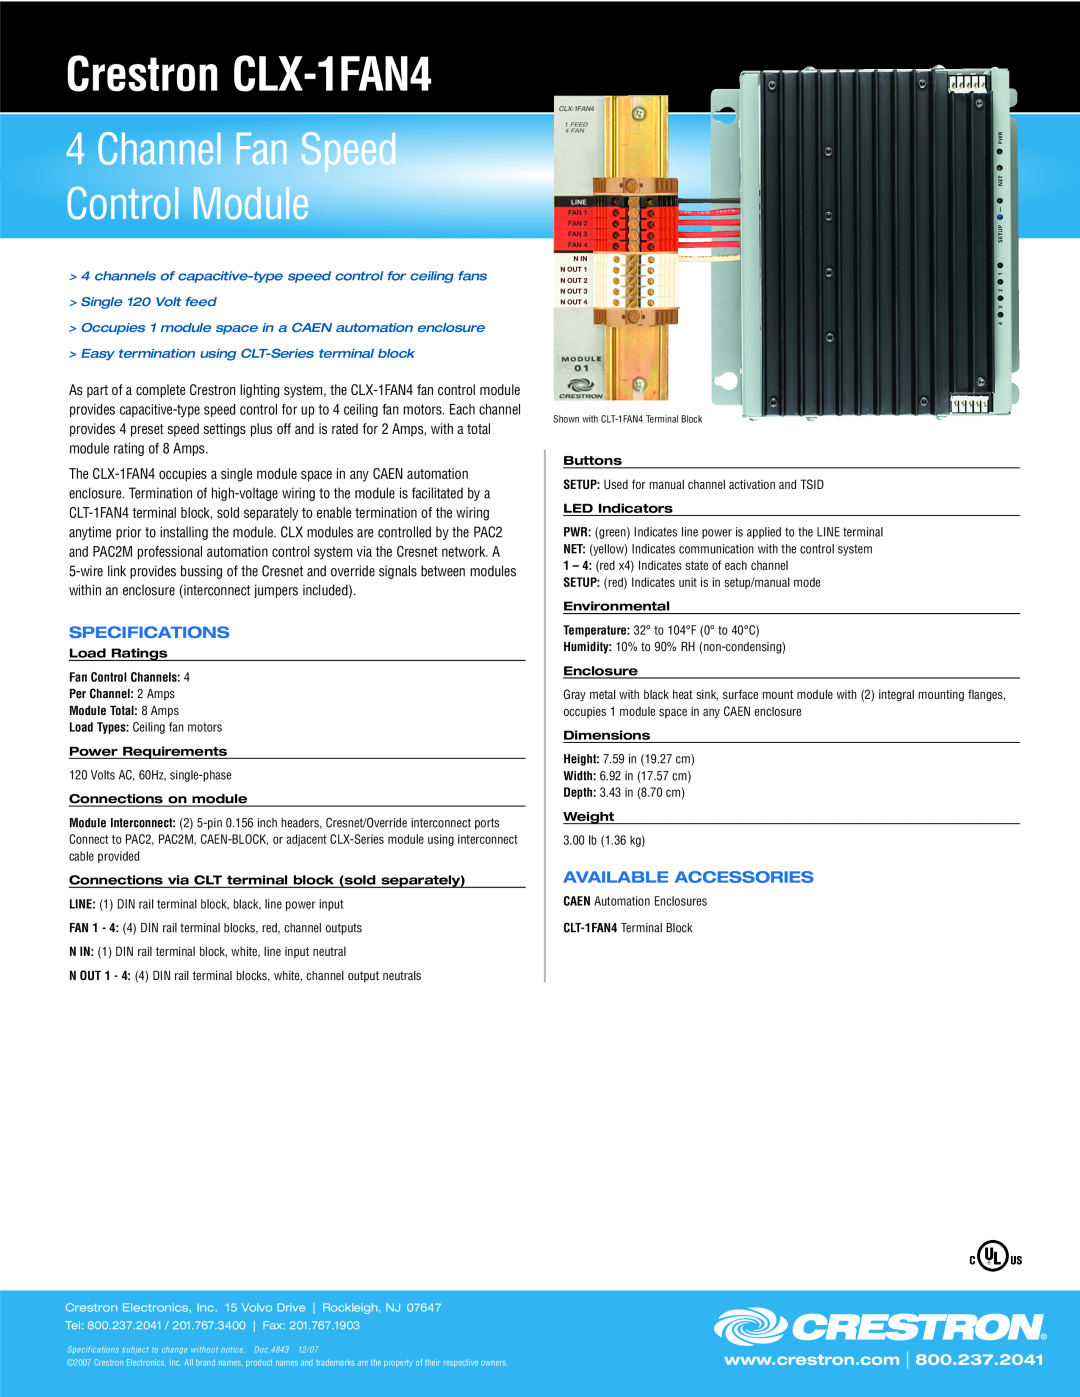 Crestron electronic specifications Crestron CLX-1FAN4, Channel Fan Speed Control Module, Specifications, l Fax 